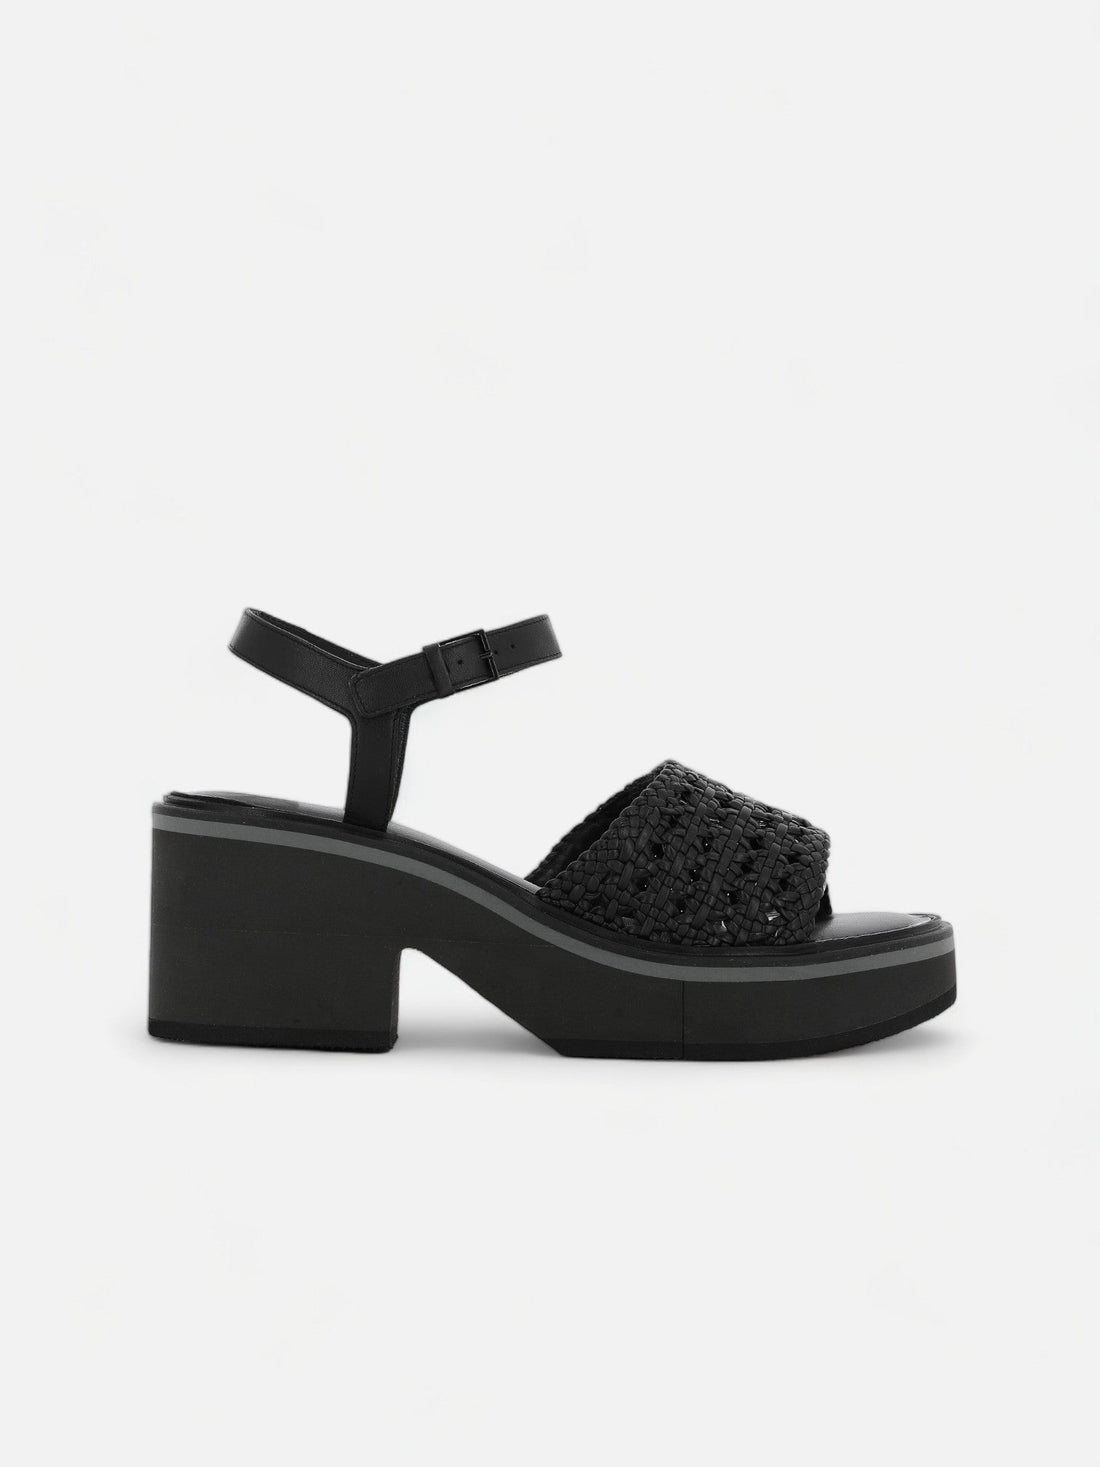 SANDALS - CELITA sandals, nappa black || OUTLET - 3606063609173 - Clergerie Paris - Europe